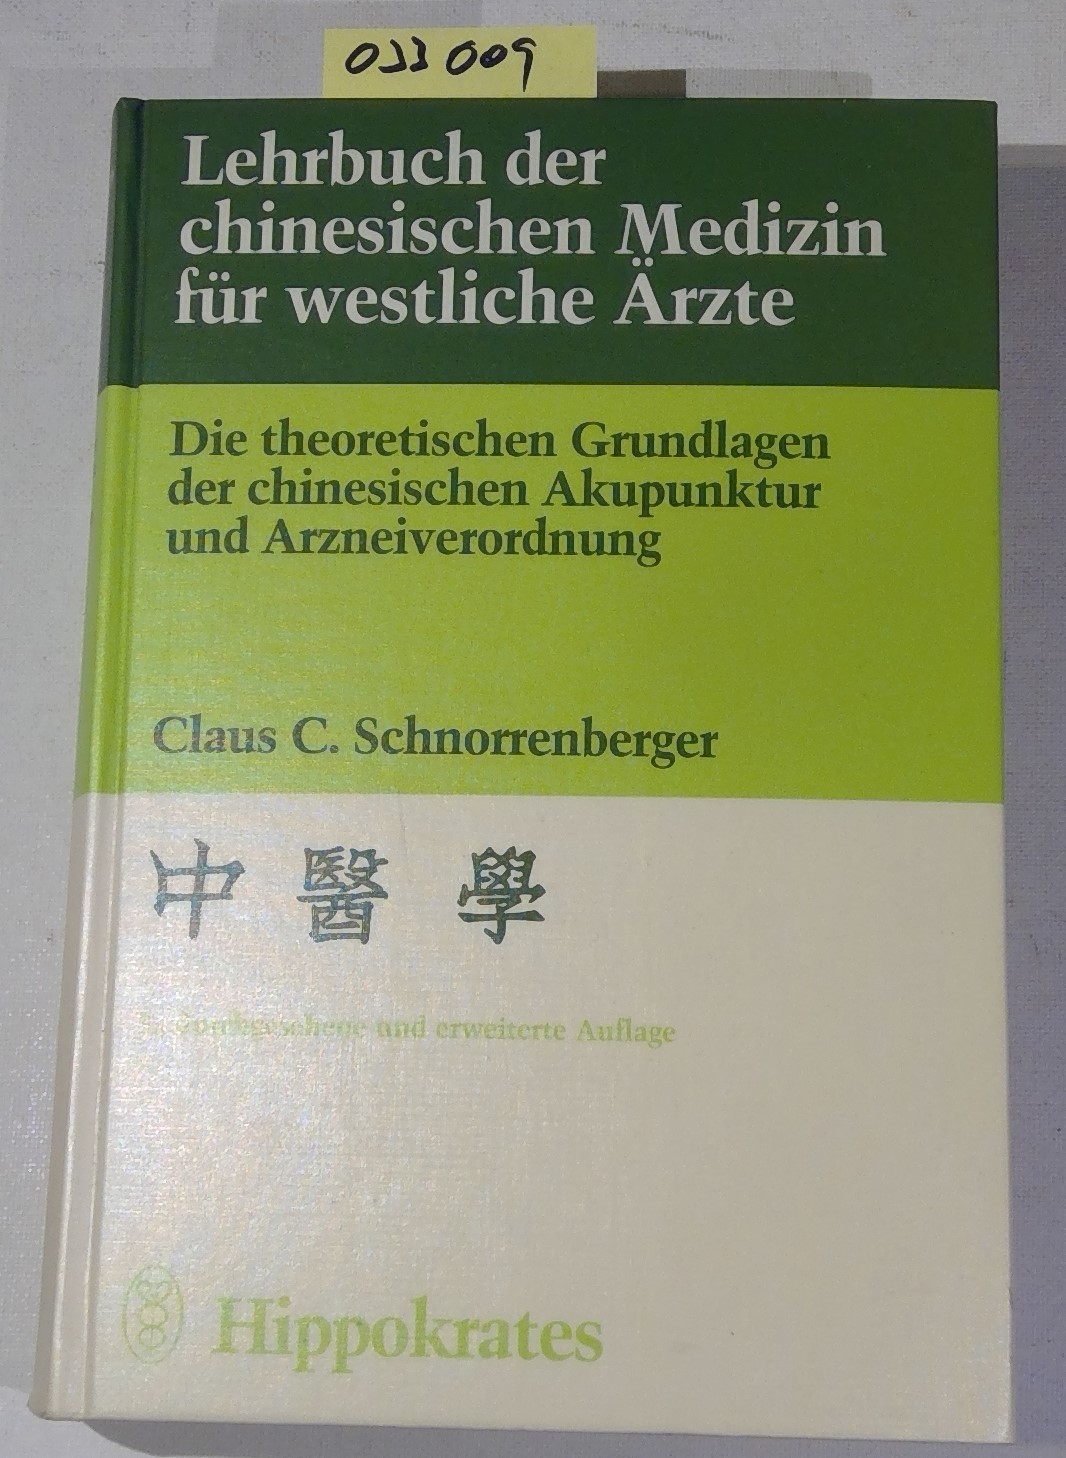 Lehrbuch der chinesischen Medizin für westliche Ärzte: Die theoretischen Grundlagen der chinesischen Akupunktur und Arzneiverordnung - Schnorrenberger, Claus C.